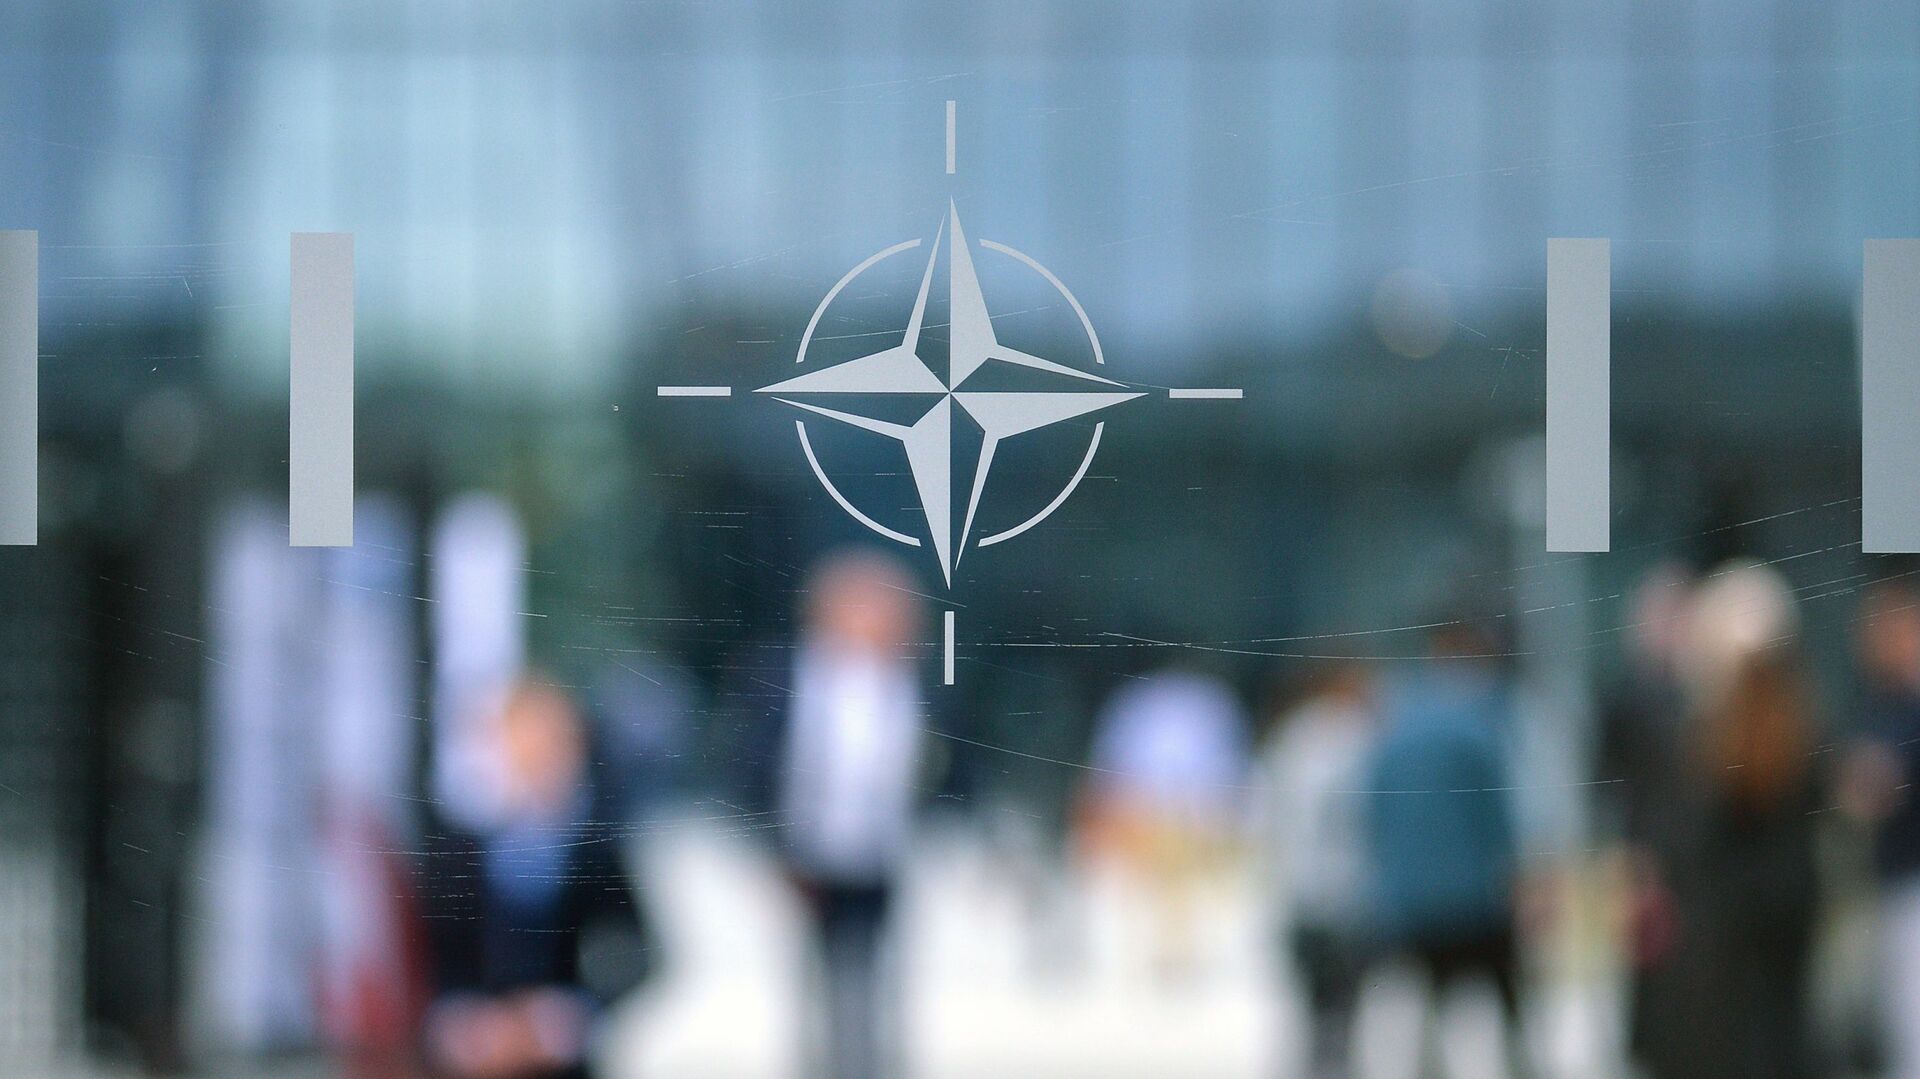 Эмблема Организации Североатлантического договора (НАТО) в Брюсселе.   - Sputnik Абхазия, 1920, 21.12.2021